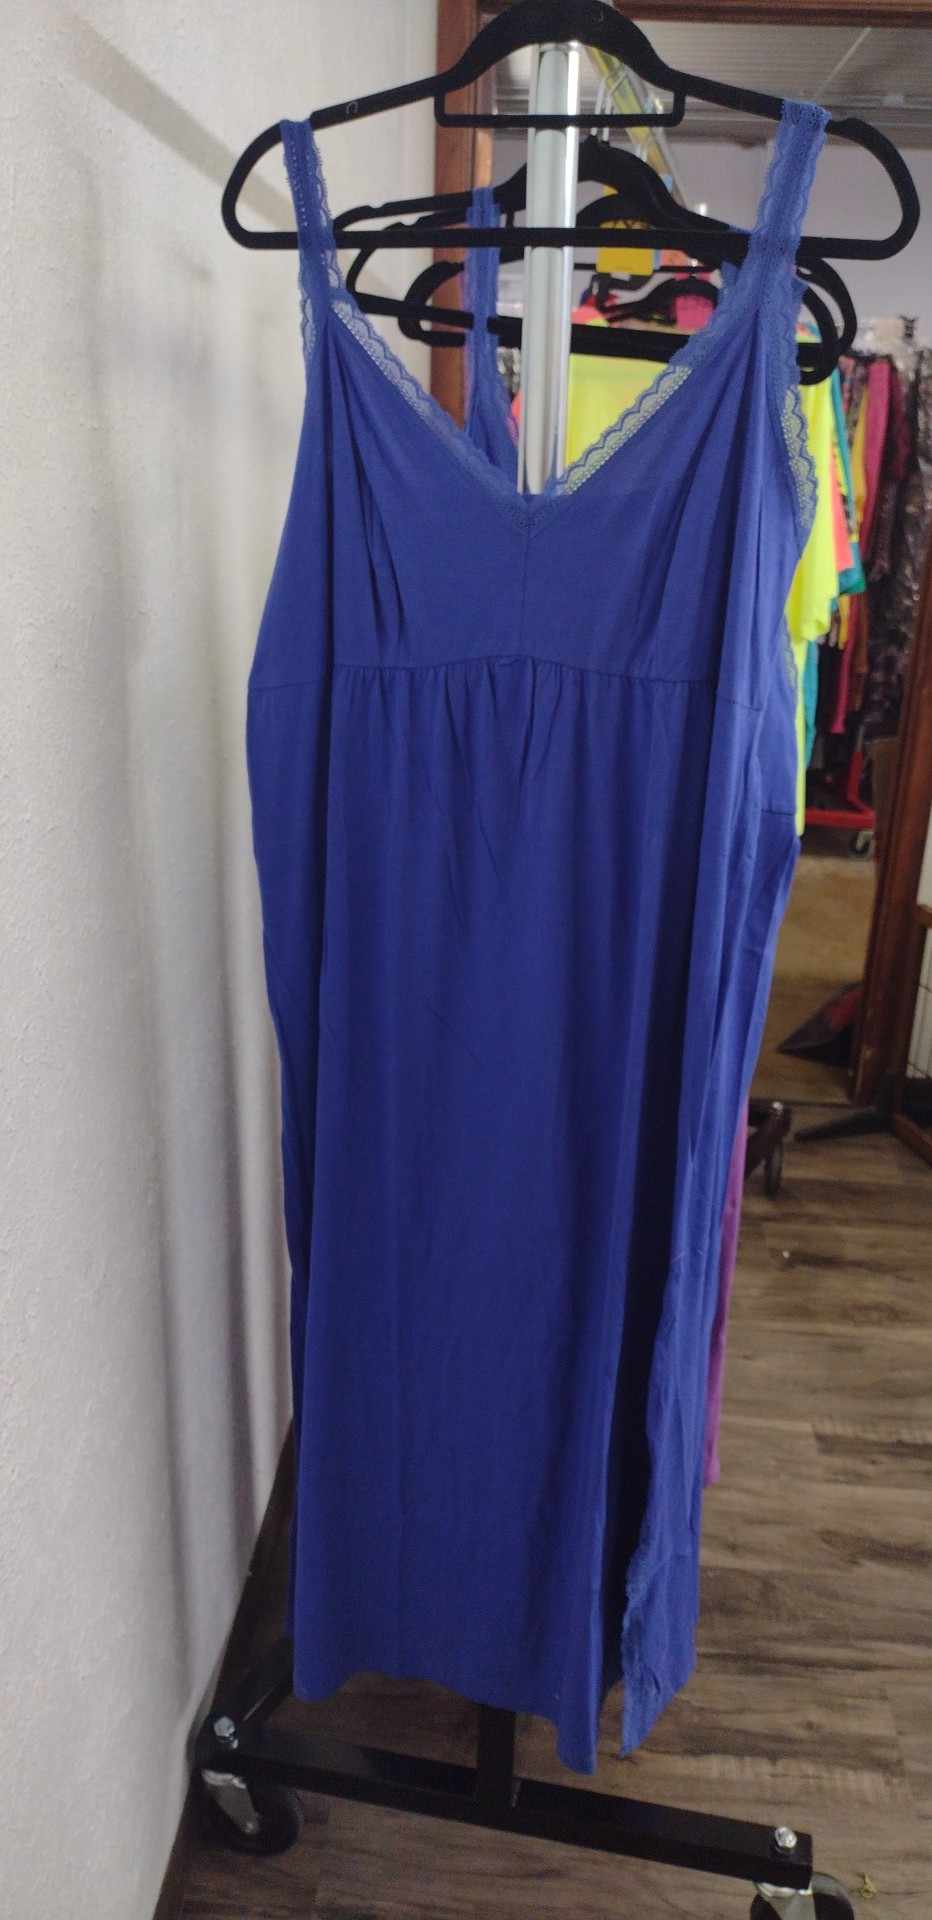 Blue Dazzle Lace Top Nightgown Sleepwear